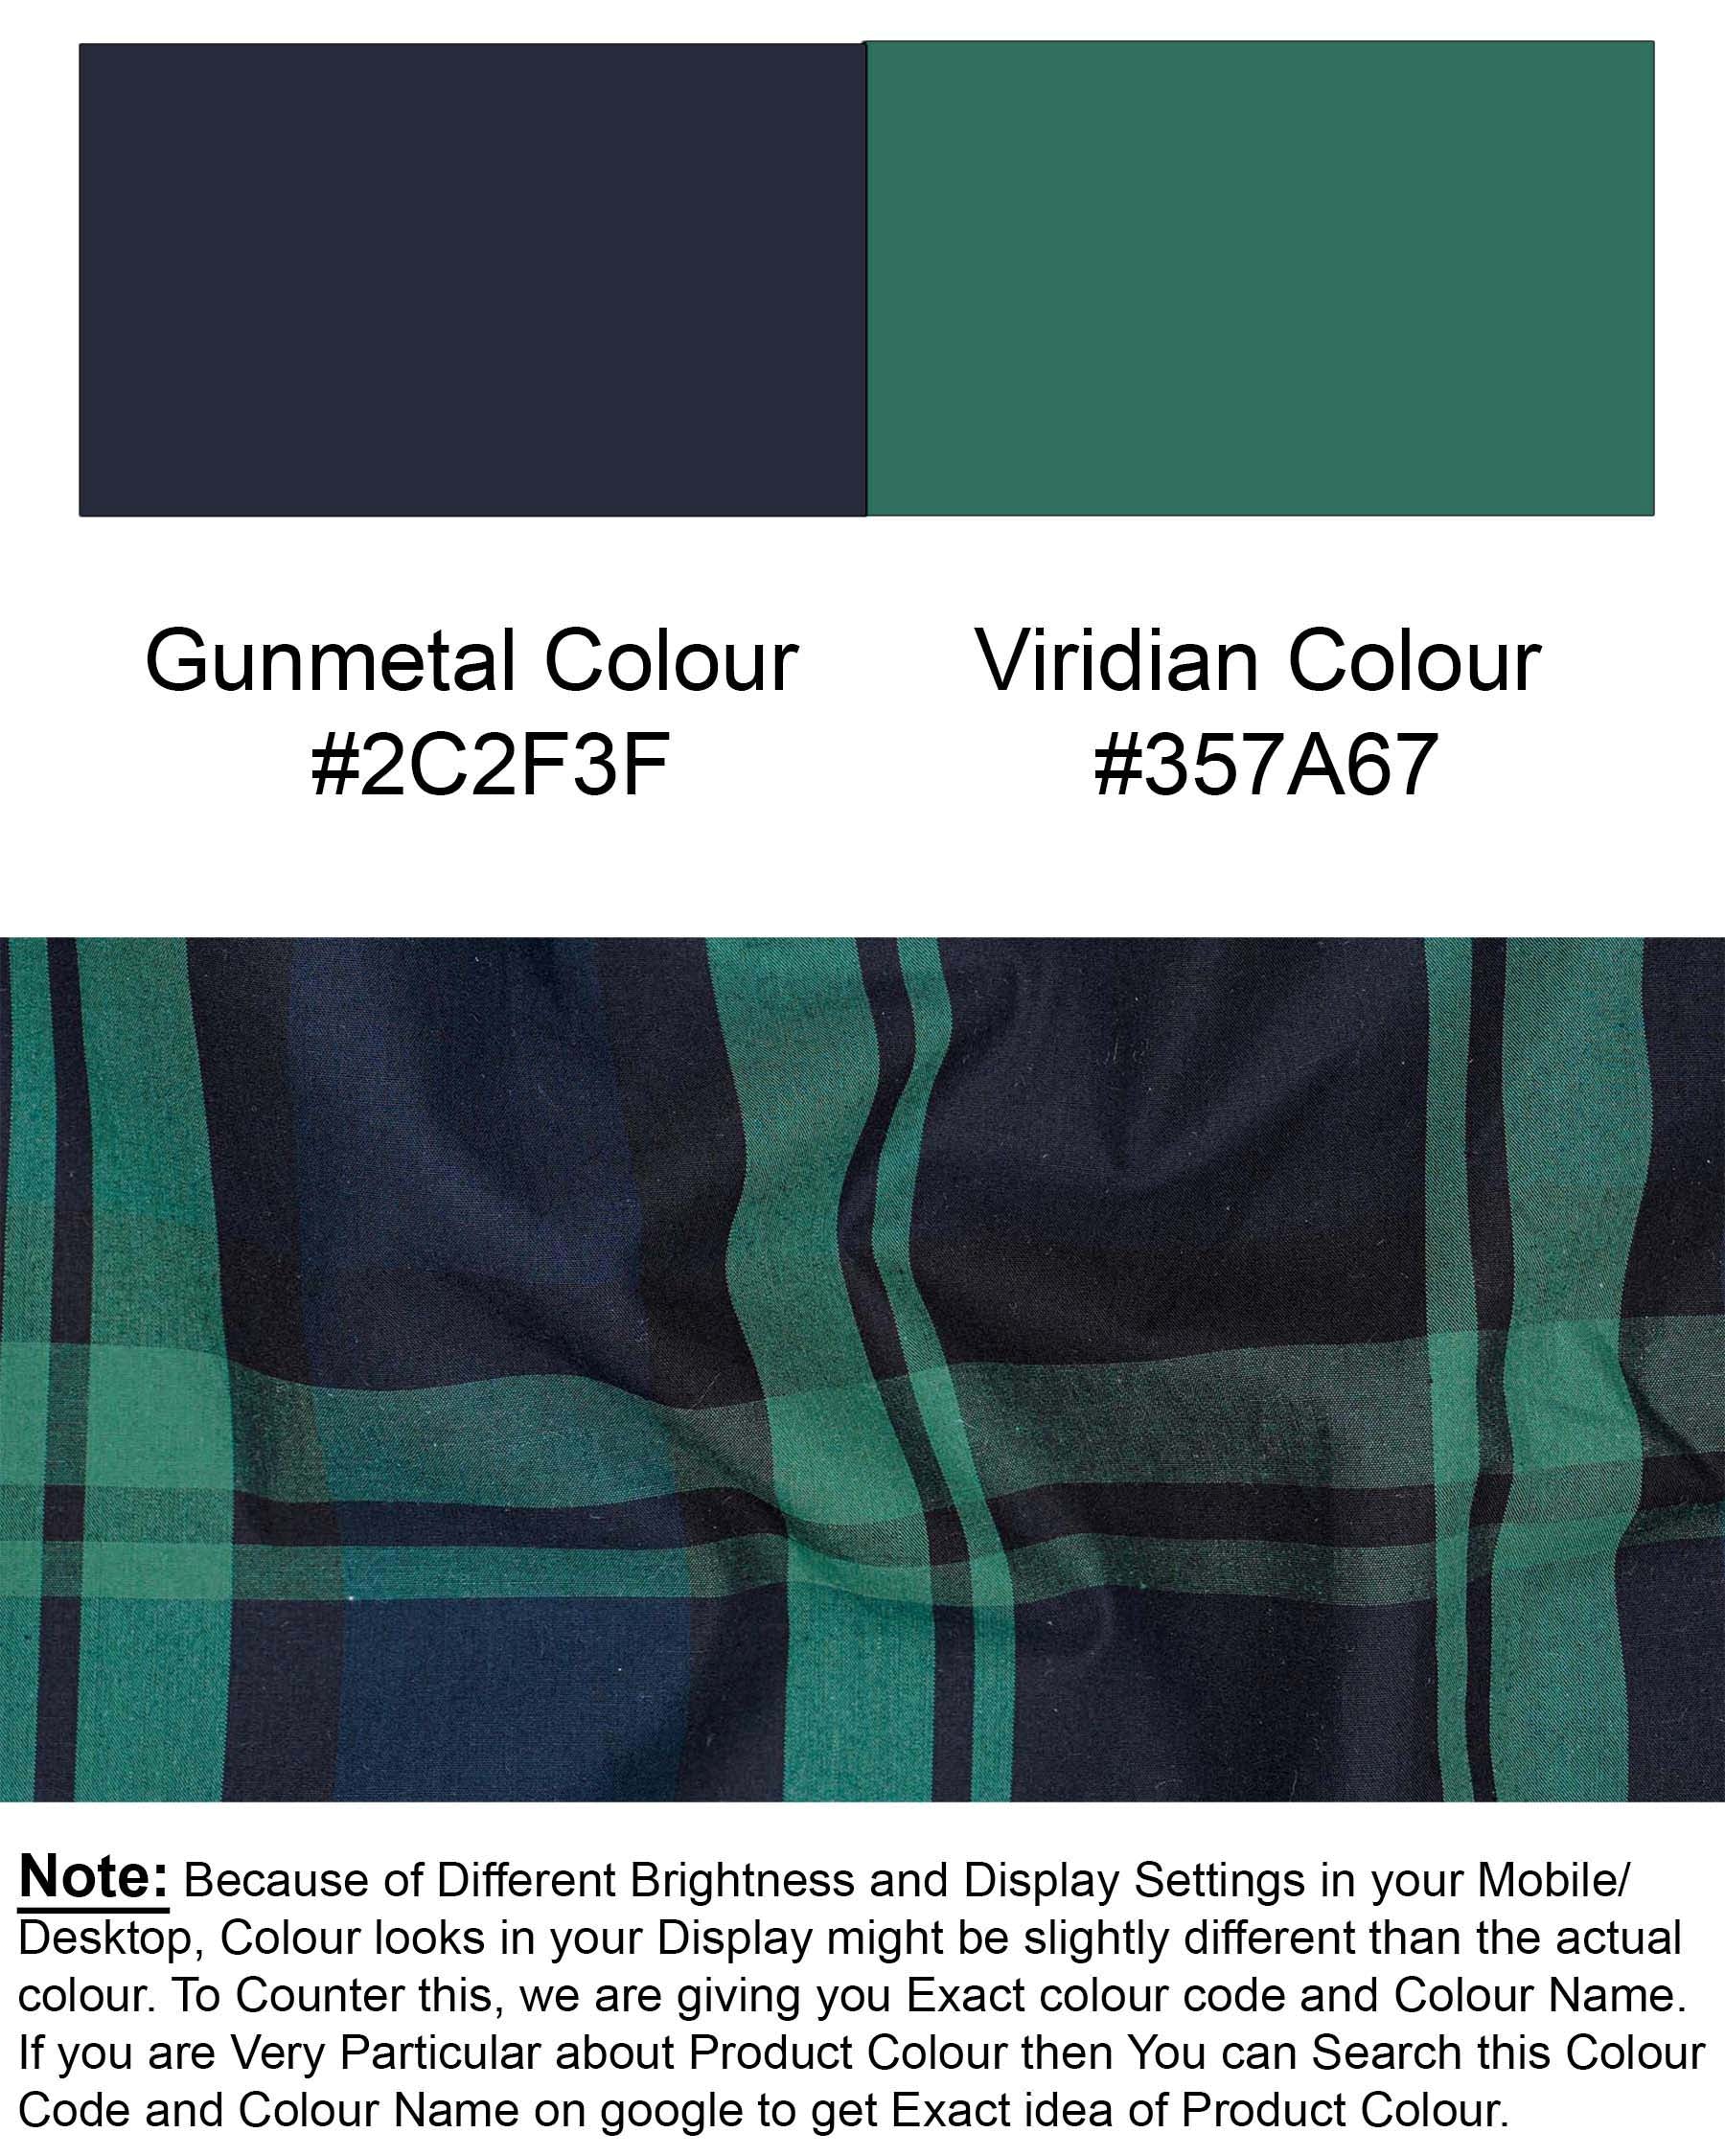 Gunmetal Blue with Viridian Green Plaid Premium Cotton Designer Shirt 7591-BLK-P196-38, 7591-BLK-P196-H-38, 7591-BLK-P196-39,7591-BLK-P196-H-39, 7591-BLK-P196-40, 7591-BLK-P196-H-40, 7591-BLK-P196-42, 7591-BLK-P196-H-42, 7591-BLK-P196-44, 7591-BLK-P196-H-44, 7591-BLK-P196-46, 7591-BLK-P196-H-46, 7591-BLK-P196-48, 7591-BLK-P196-H-48, 7591-BLK-P196-50, 7591-BLK-P196-H-50, 7591-BLK-P196-52, 7591-BLK-P196-H-52